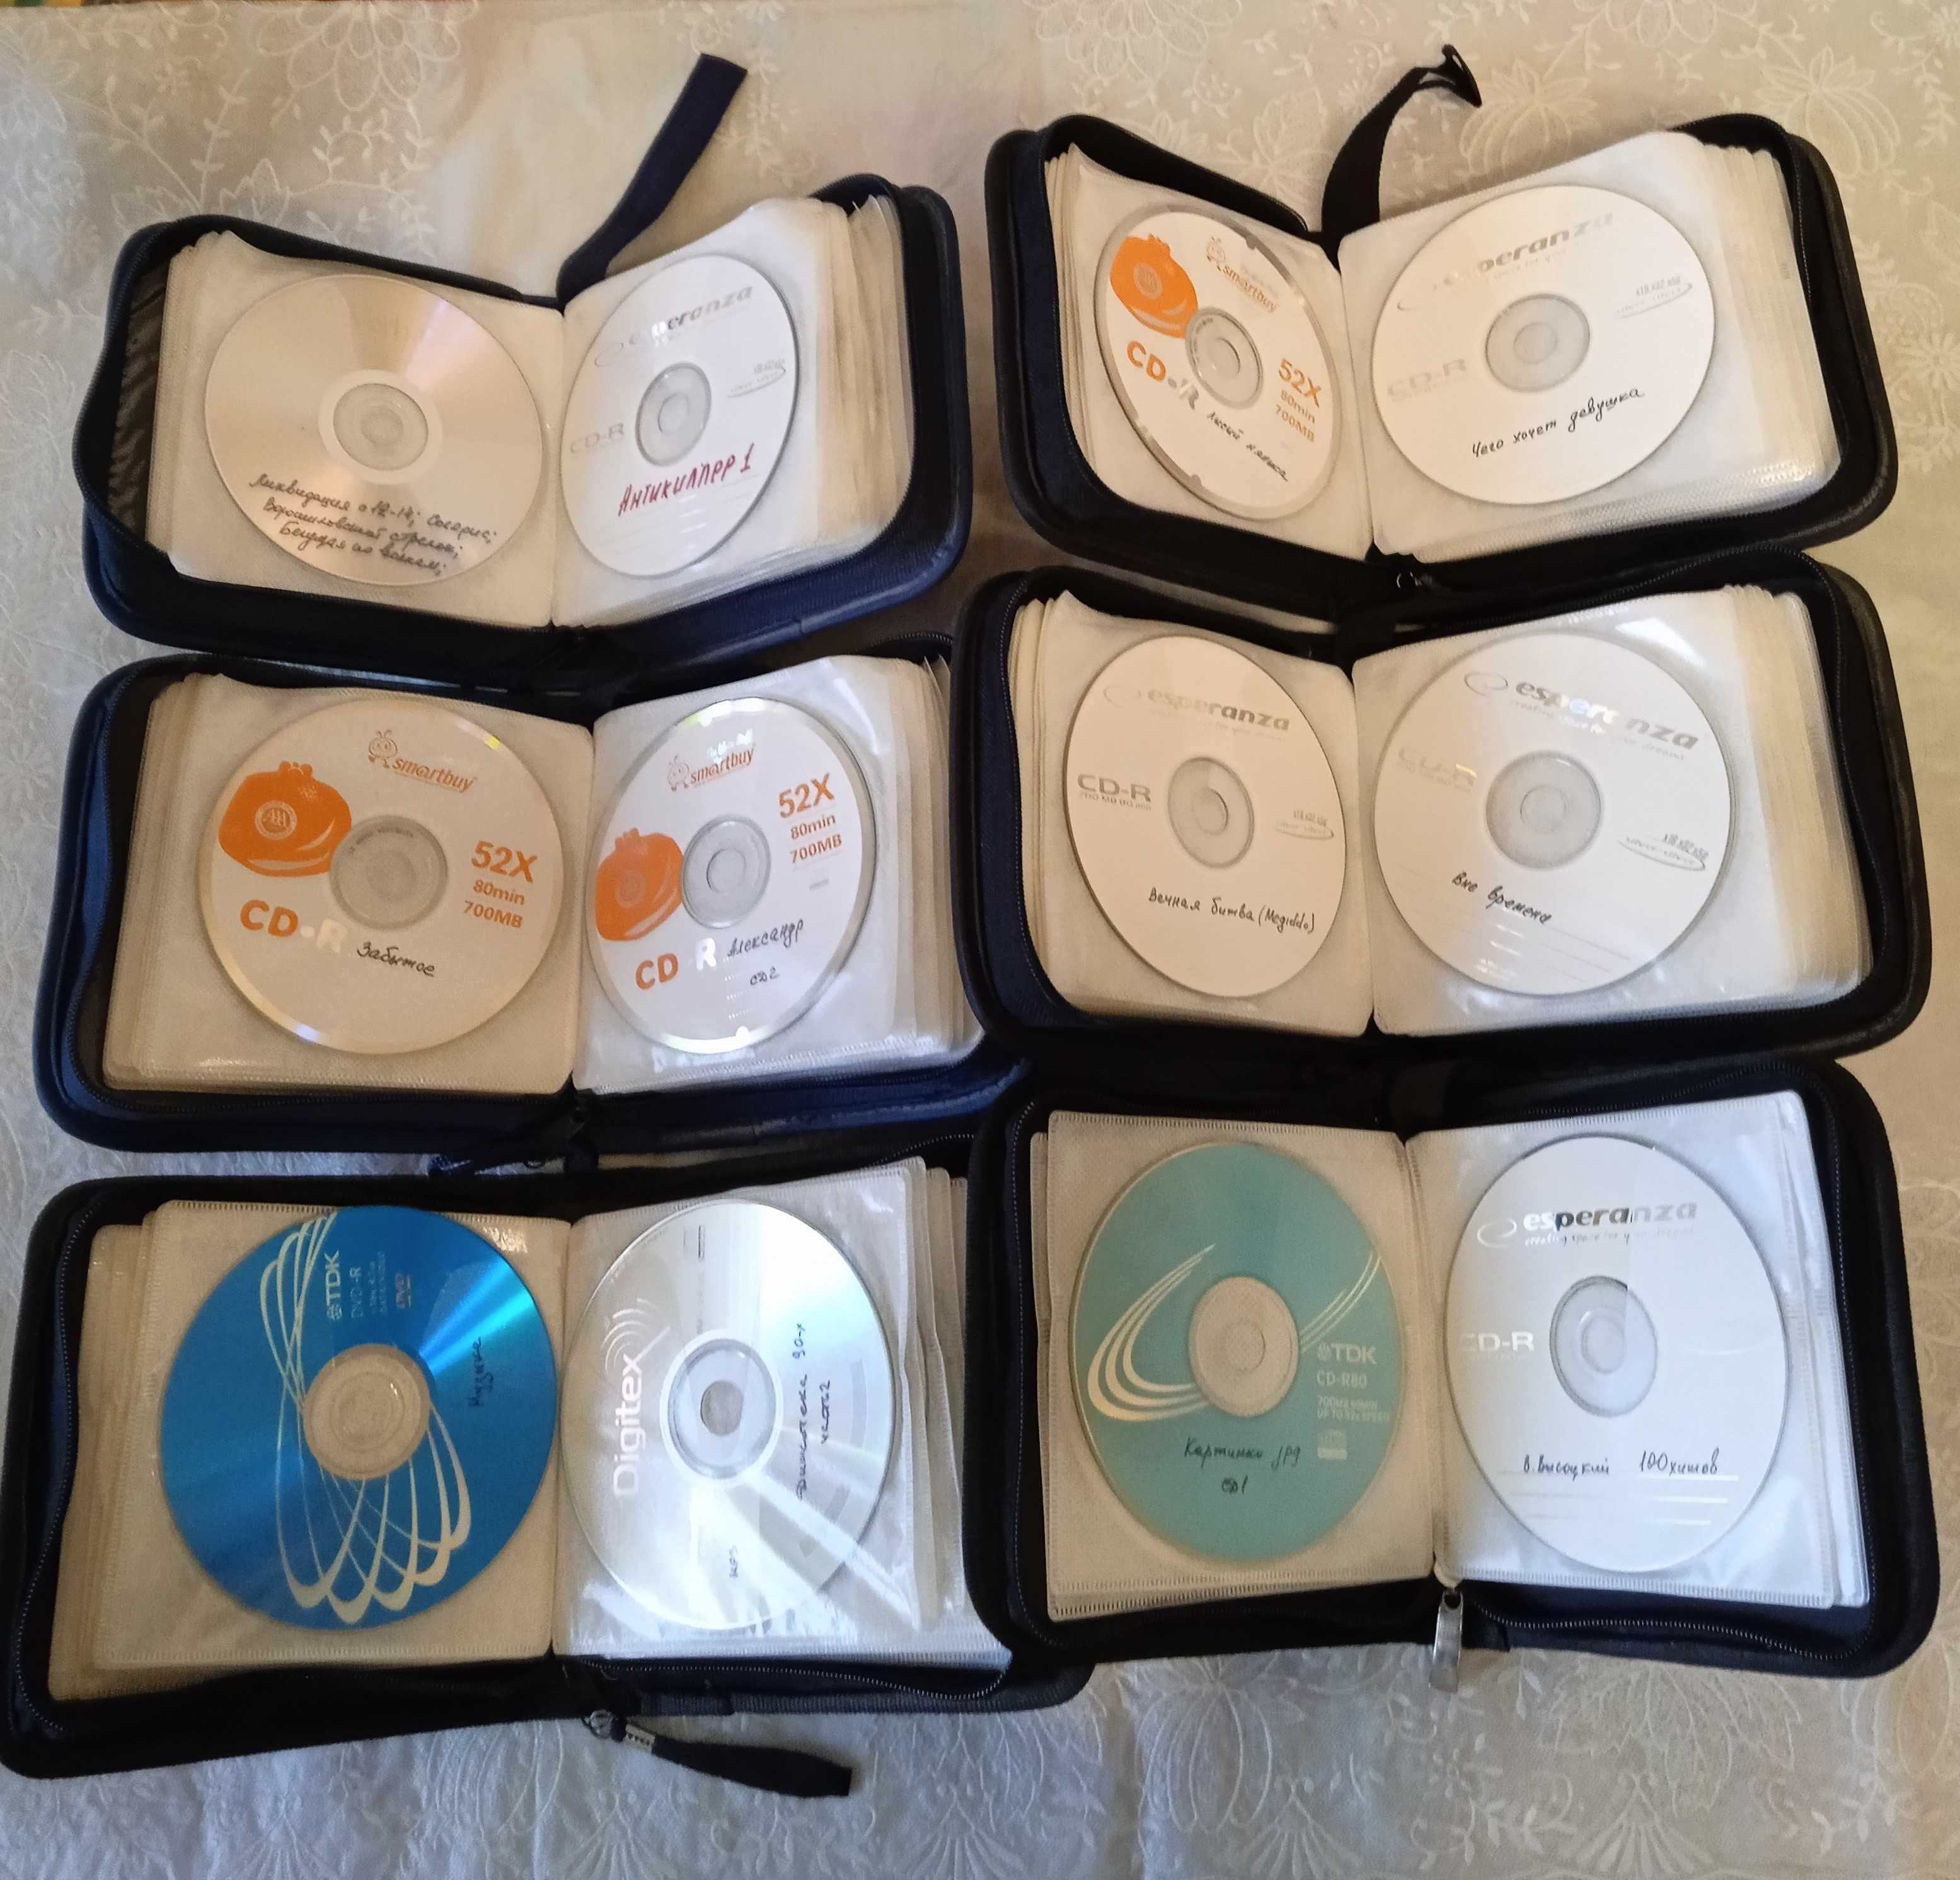 Фильмы на дисках CD, DVD в сумках кейсах по 40 дисков. сумки.